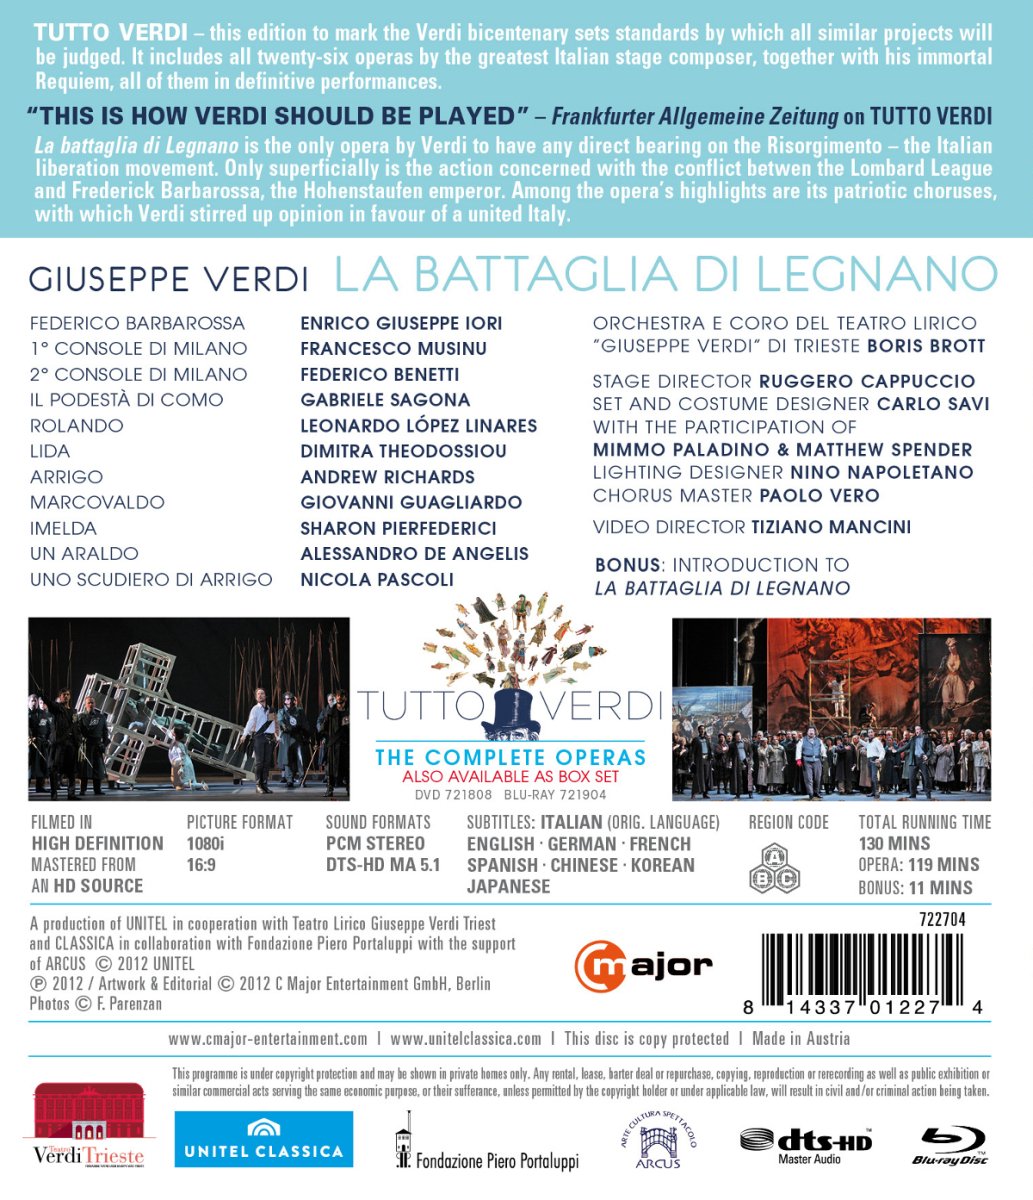 Boris Brott 베르디: 레냐노의 전투 (Giuseppe Verdi: Tutto Verdi Vol. 13 - L Battaglia Di Legnano) 